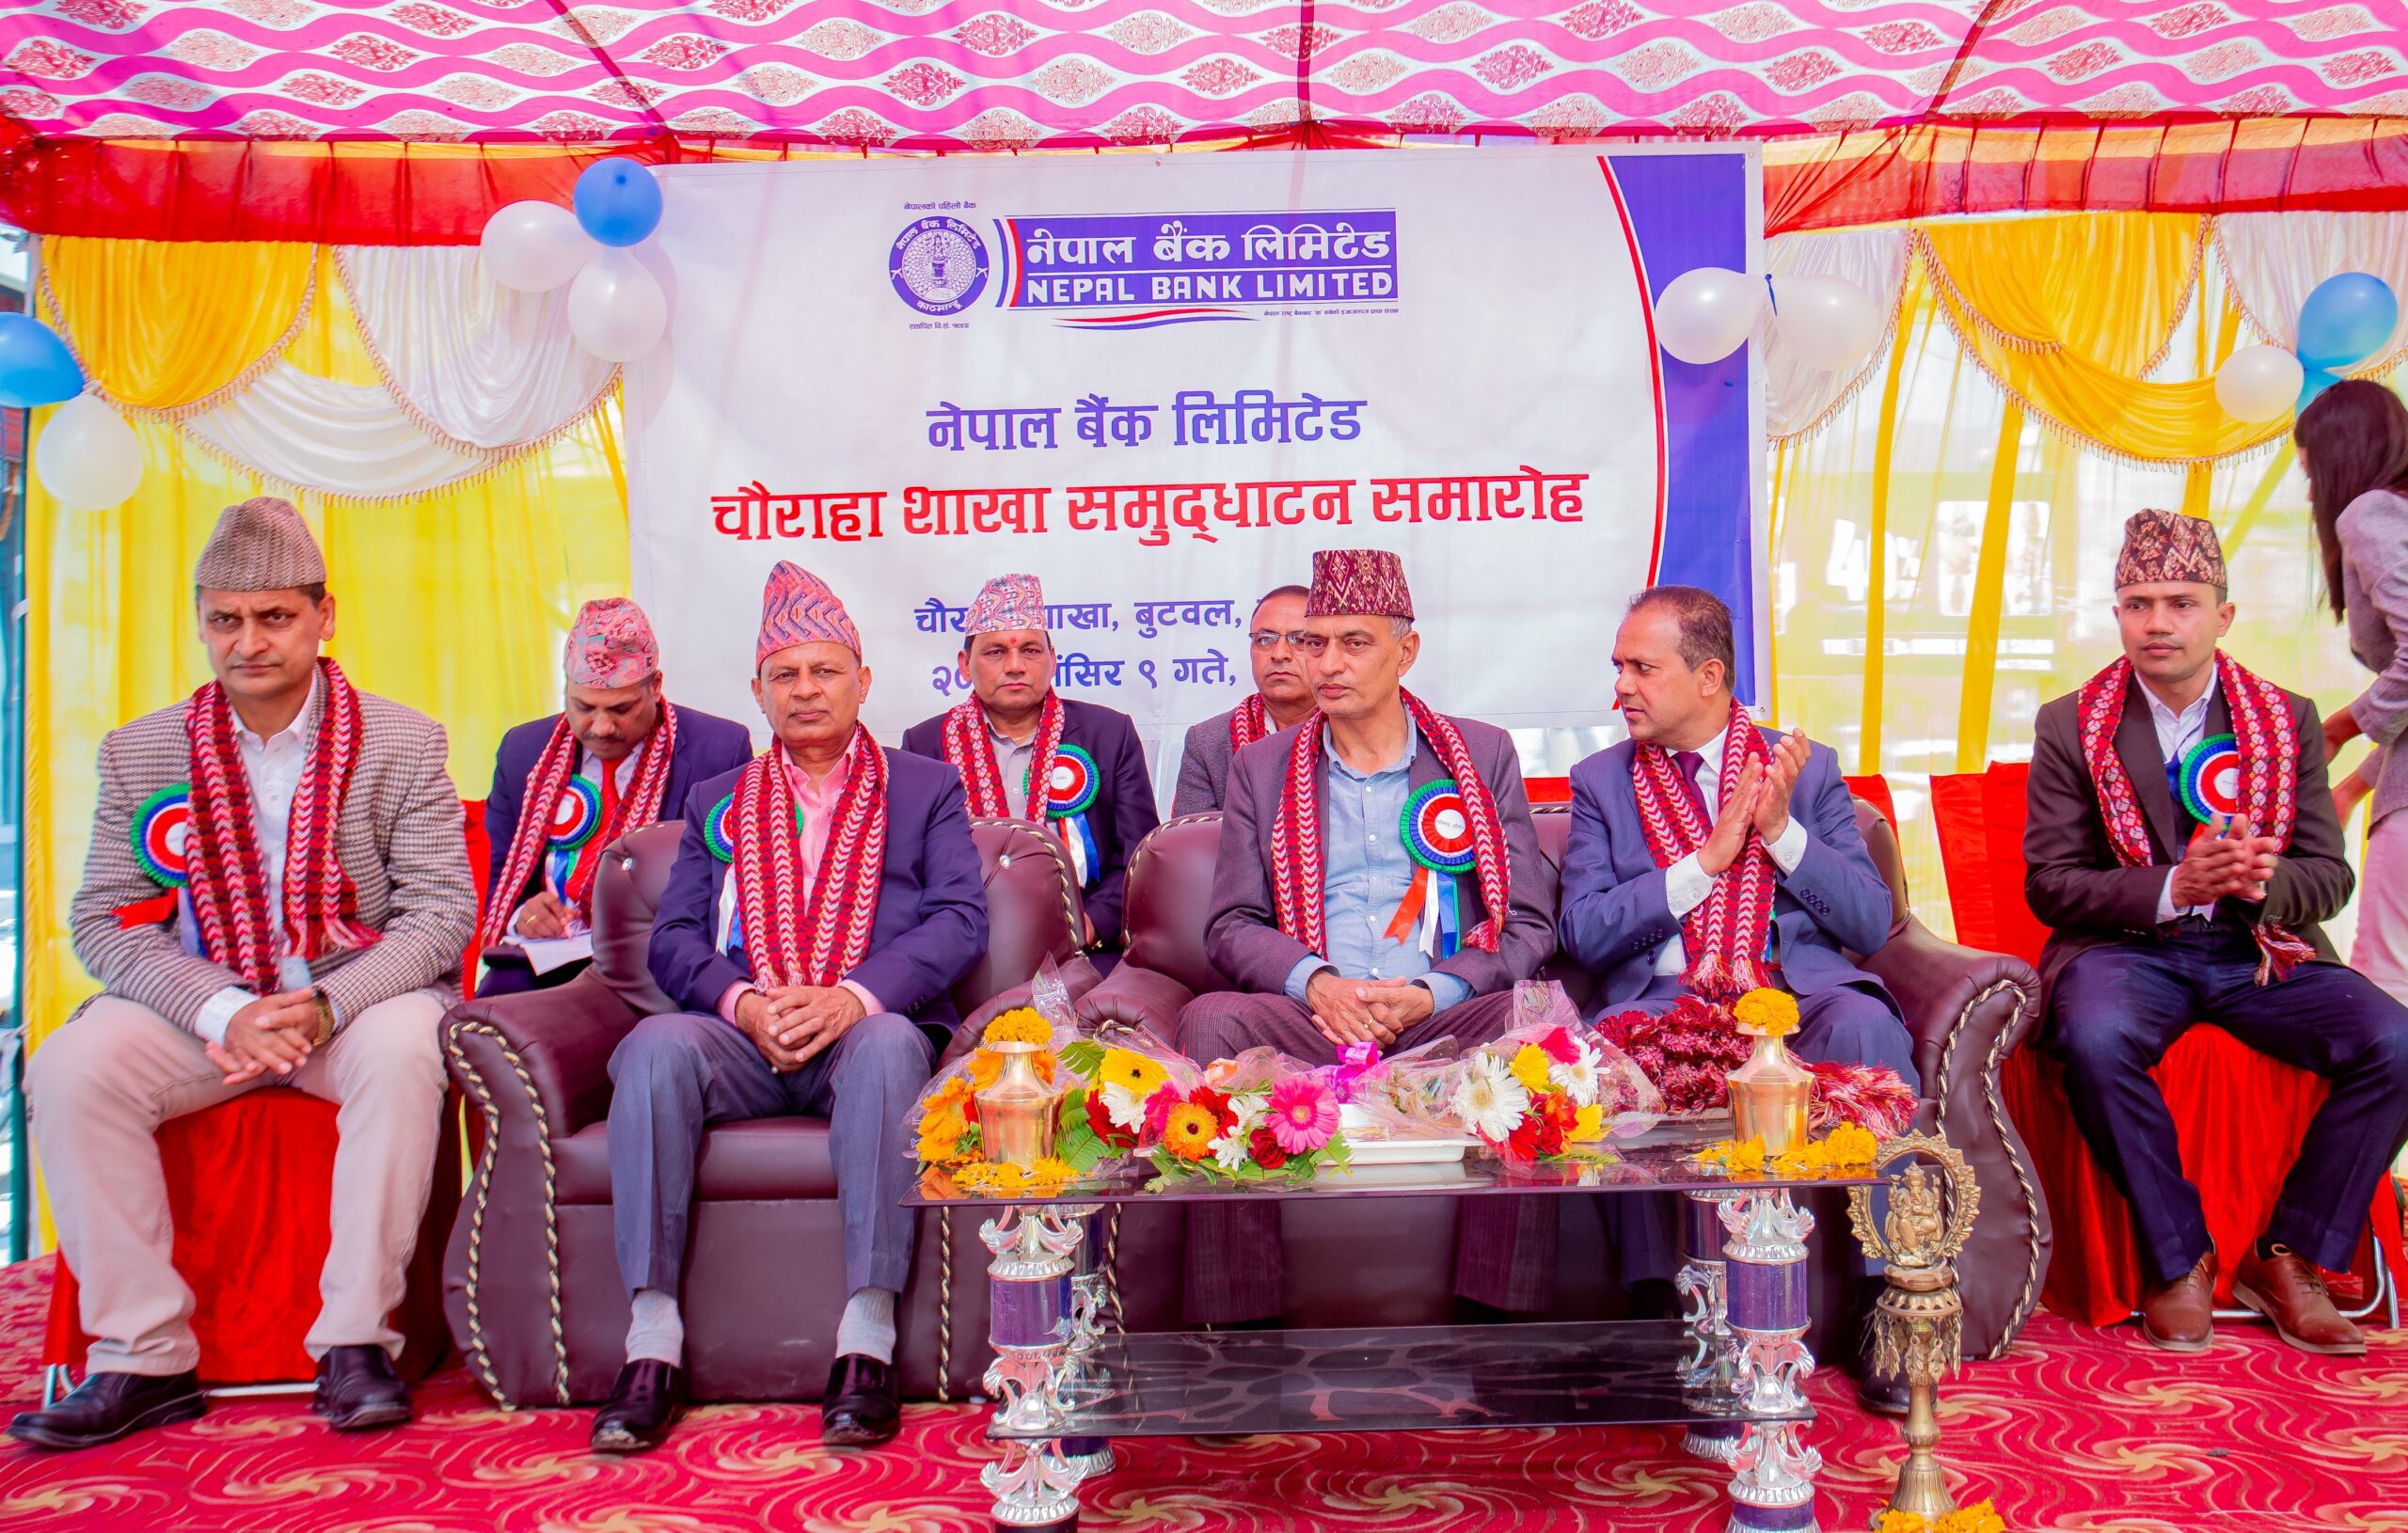 नेपाल बैंक चौराहा शाखाको उद्घाटन